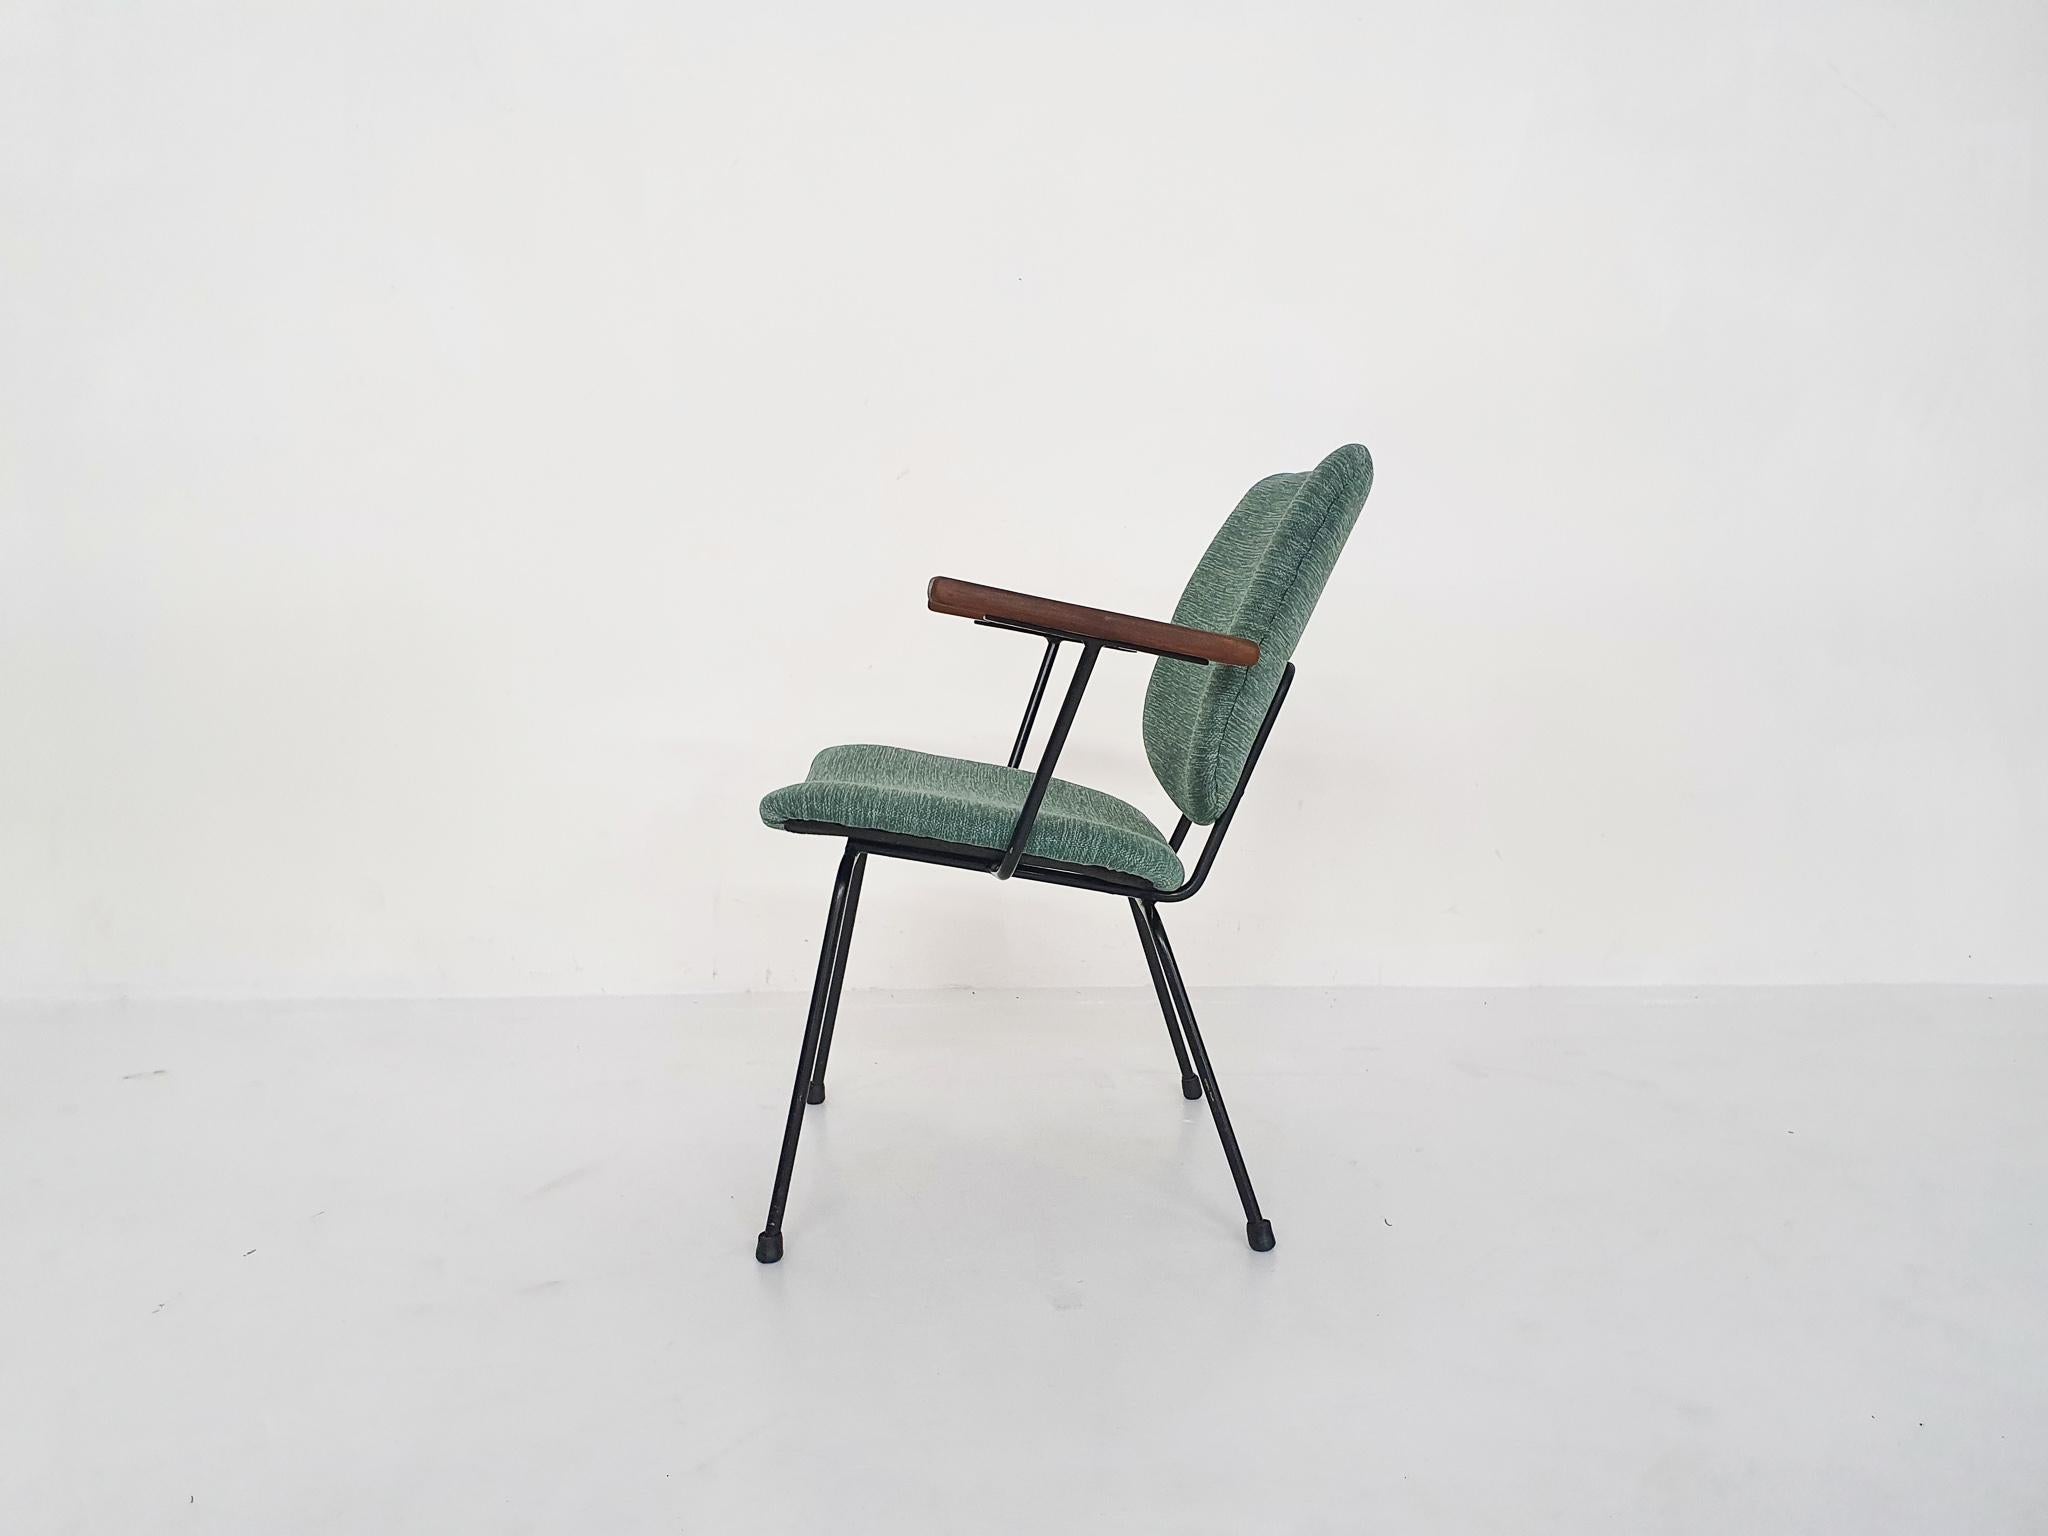 Chaise longue minimaliste, conçue par W.H. Gispen pour Kembo aux Pays-Bas en 1954
Structure en métal noir avec accoudoirs en teck et nouveau revêtement vert.